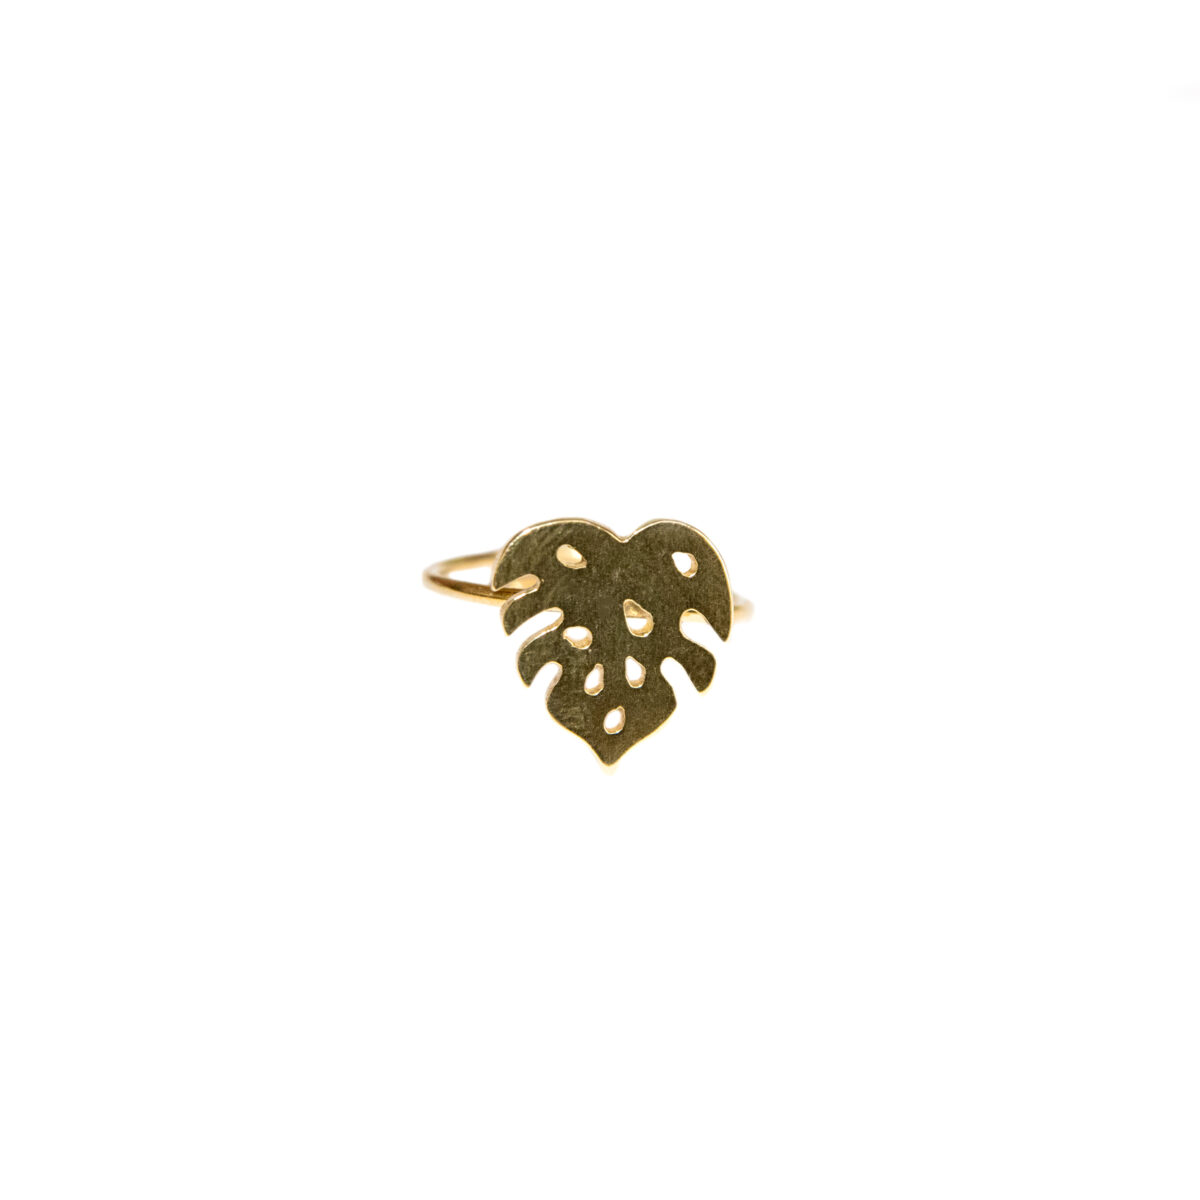 “Τροπικό” επίχρυσο δαχτυλίδι “Τροπικό” επίχρυσο δαχτυλίδι “Τροπικό” επίχρυσο δαχτυλίδι 5